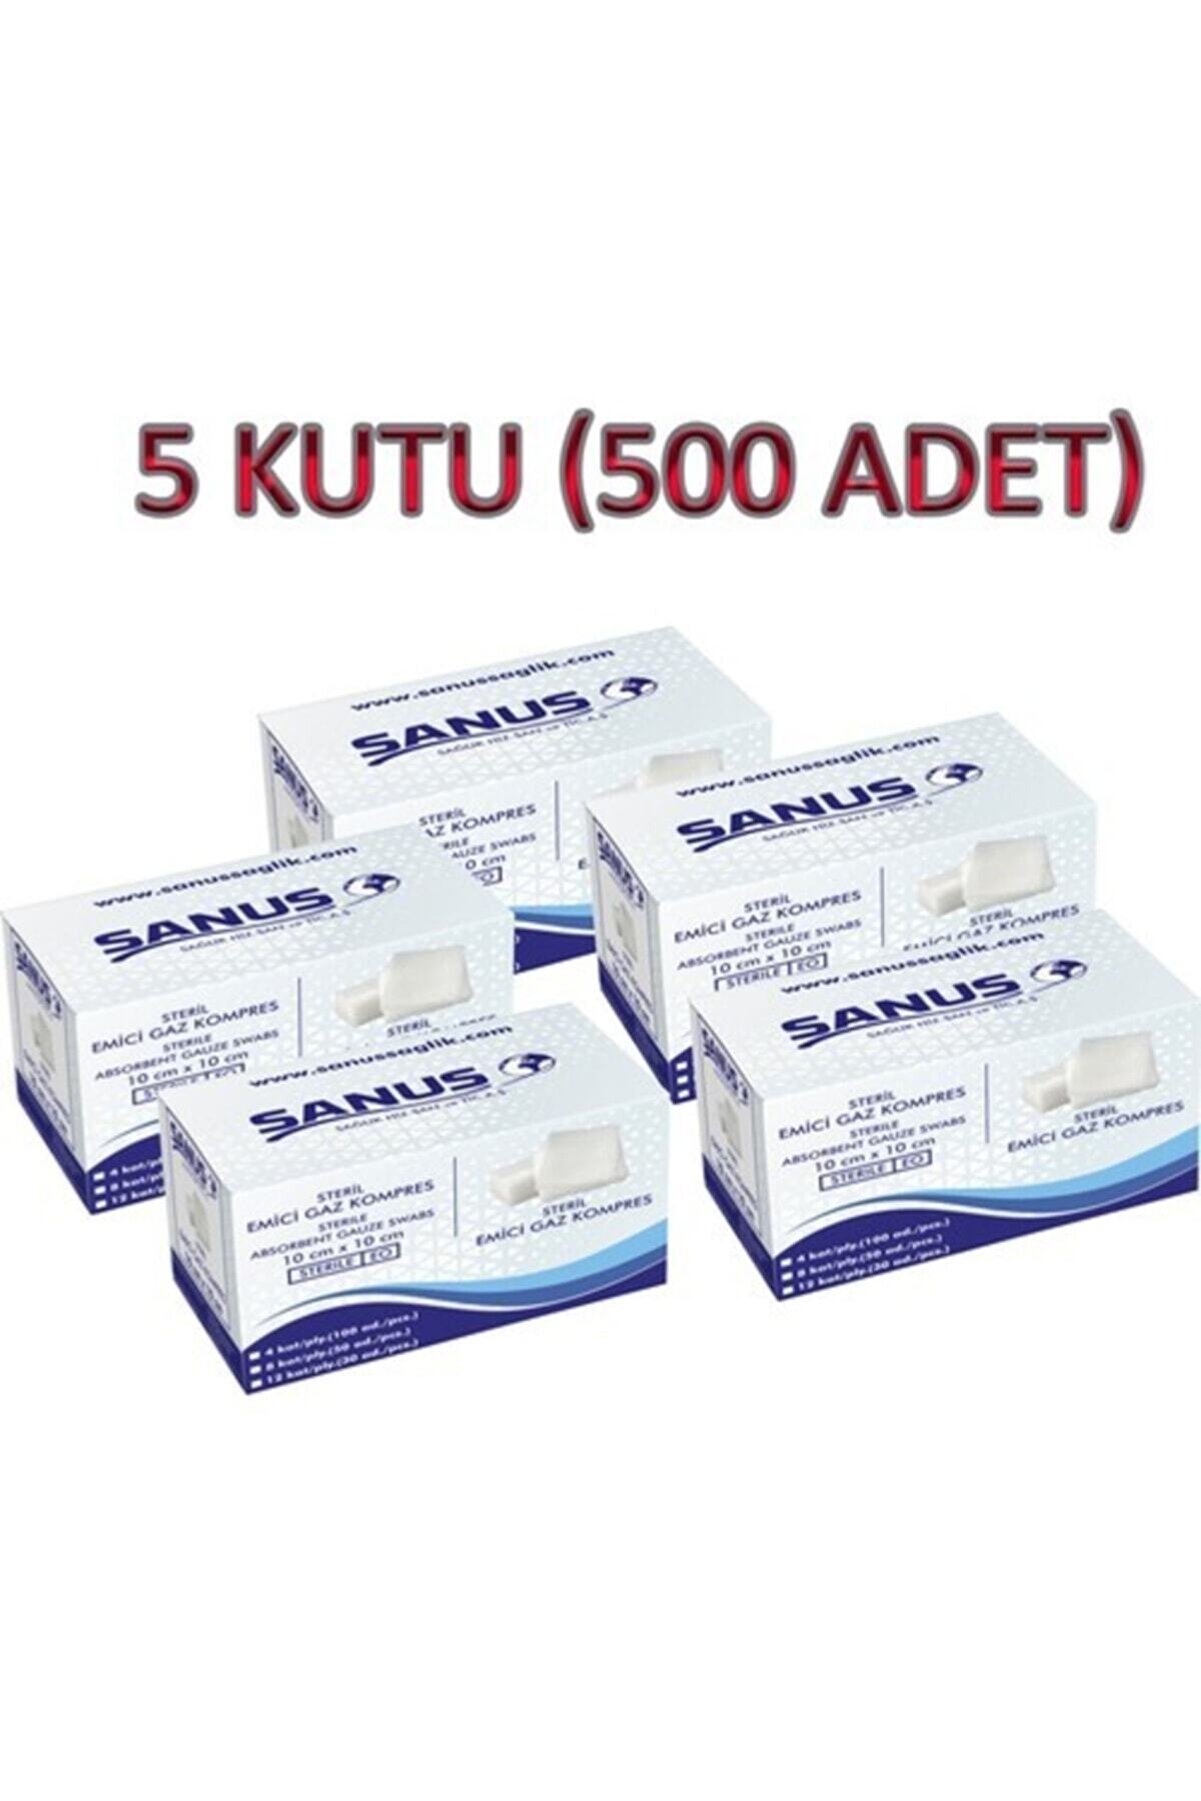 SANUS Steril Spanç Kompres 7,5x7,5 5kutu 500 Adet